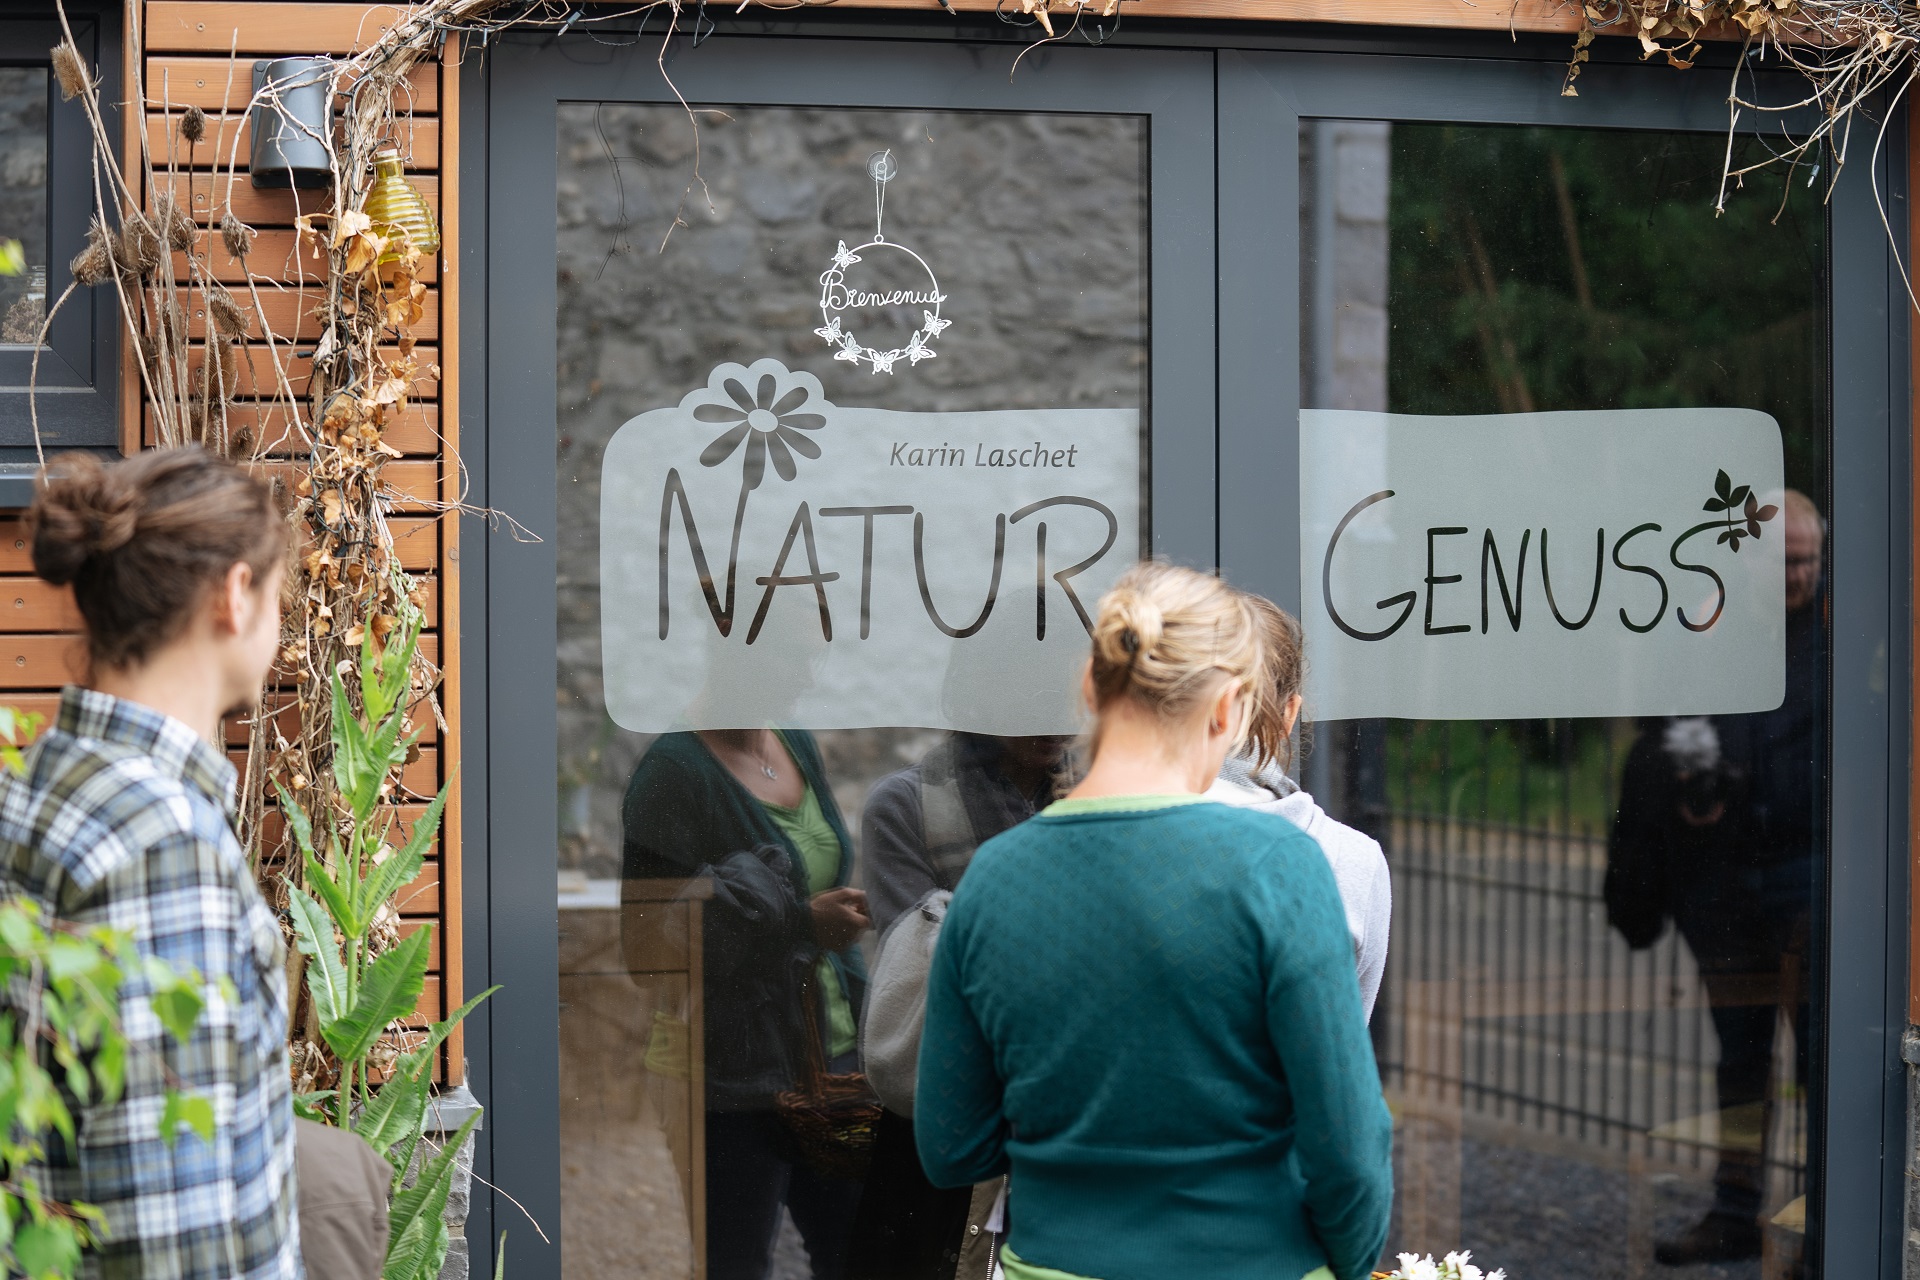 Vue de l'entrée de la cuisine de Karin Laschet. Sur la porte vitrée, on peut lire "Naturgenuss" en grosses lettres.